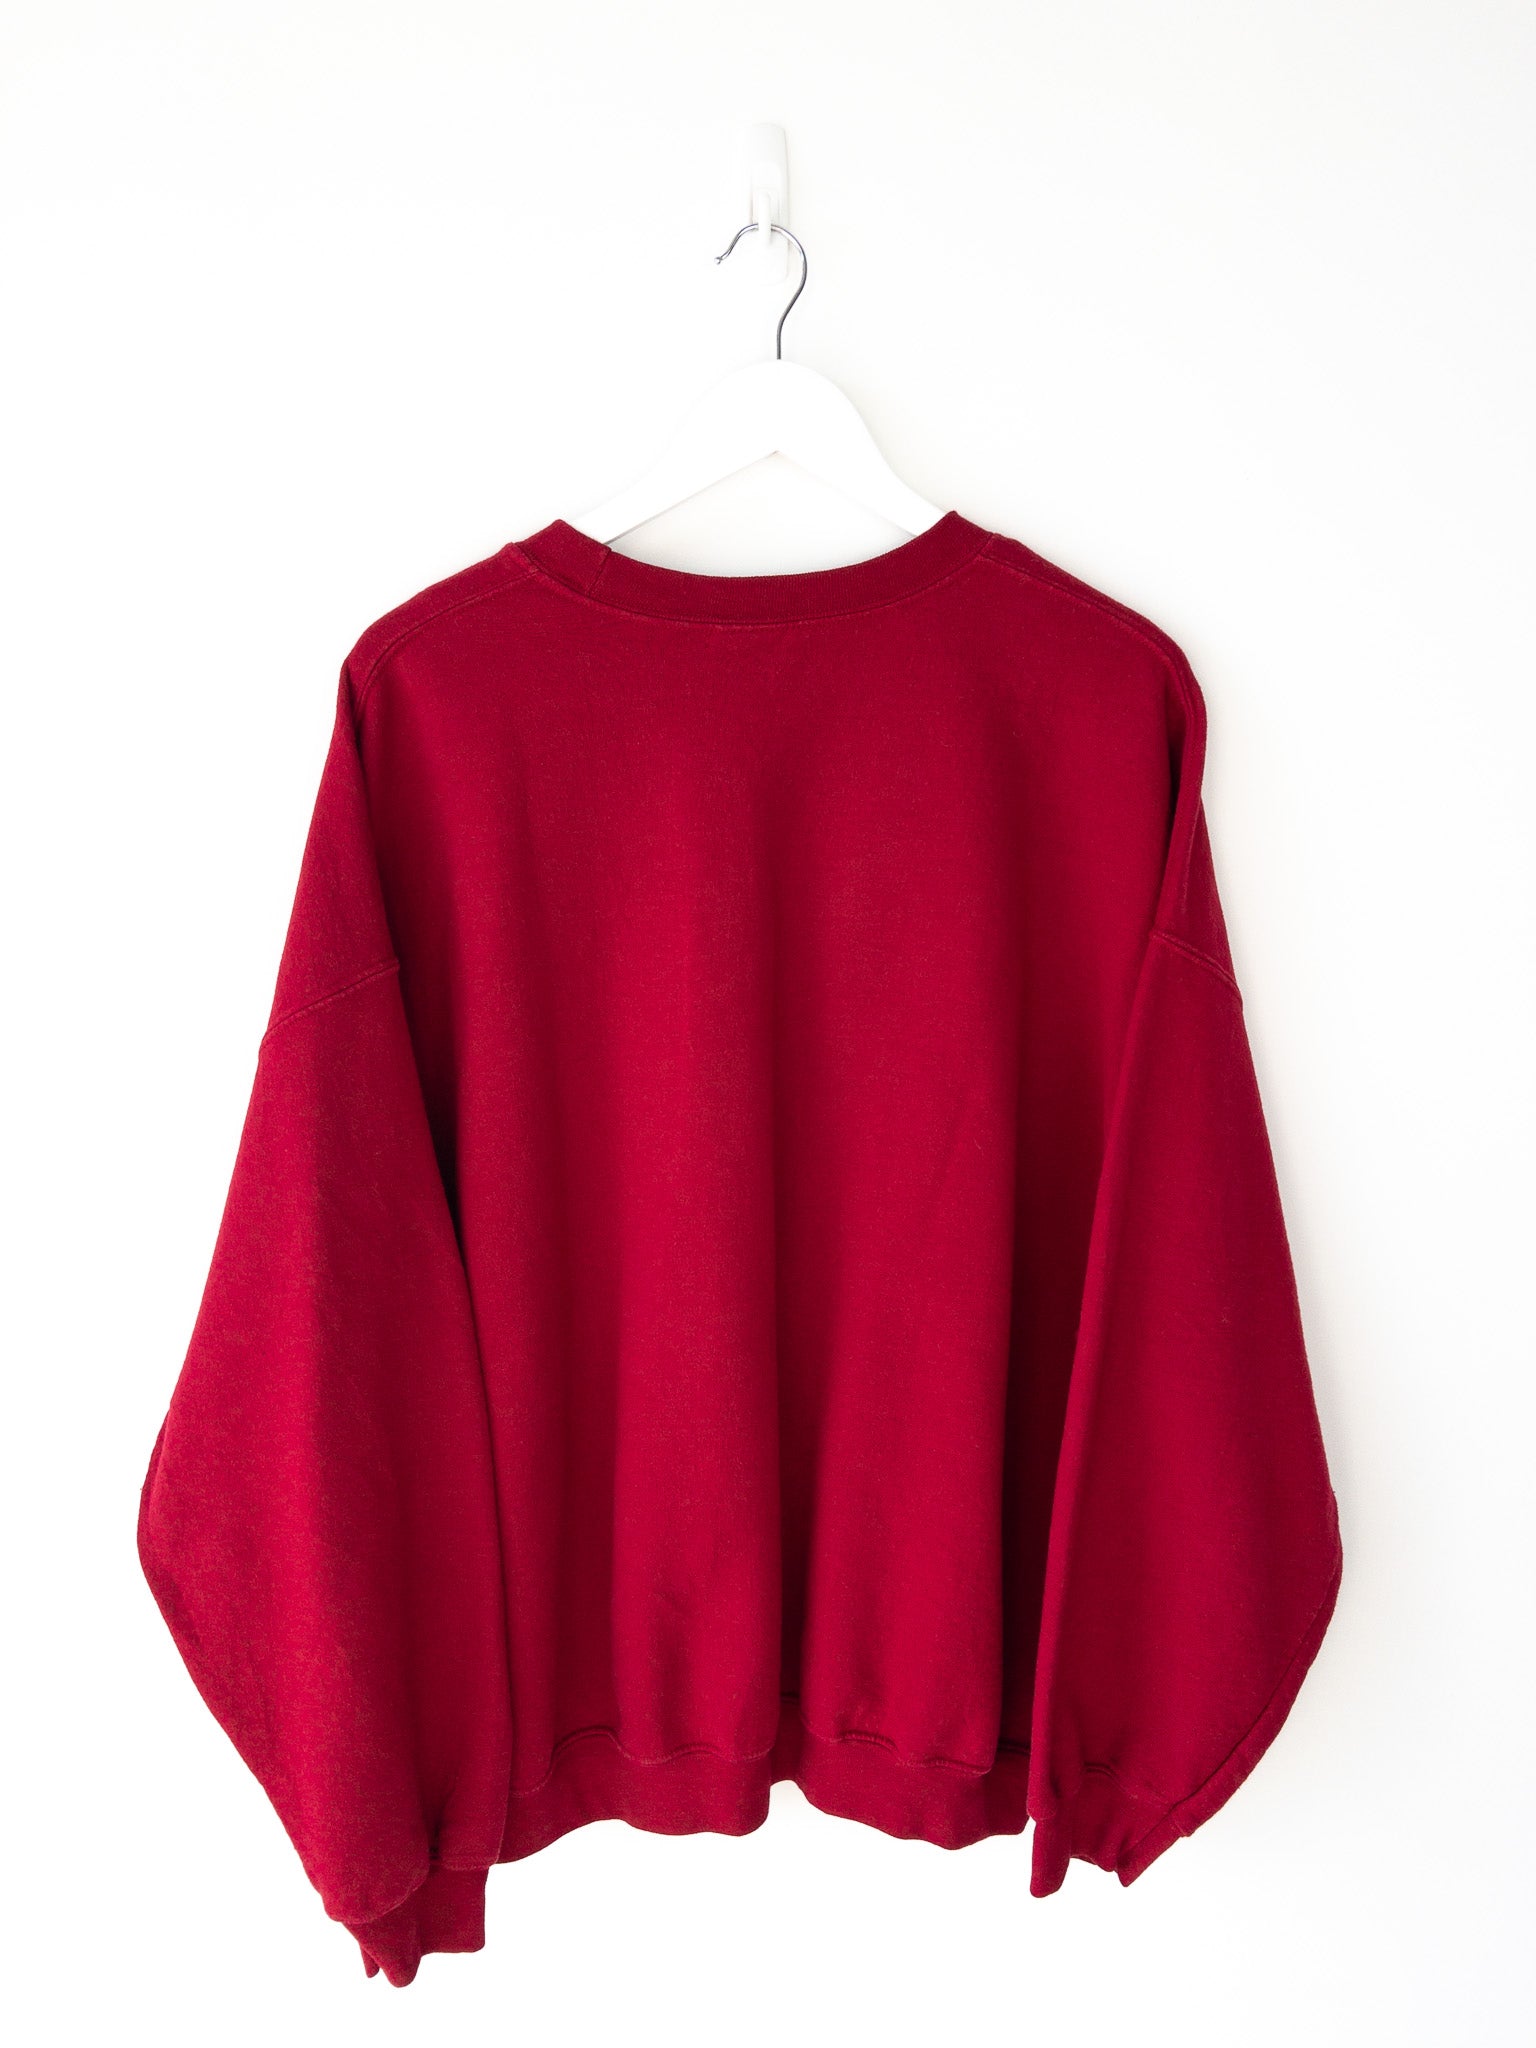 Vintage Arkansas Razorbacks Sweatshirt (XXL)